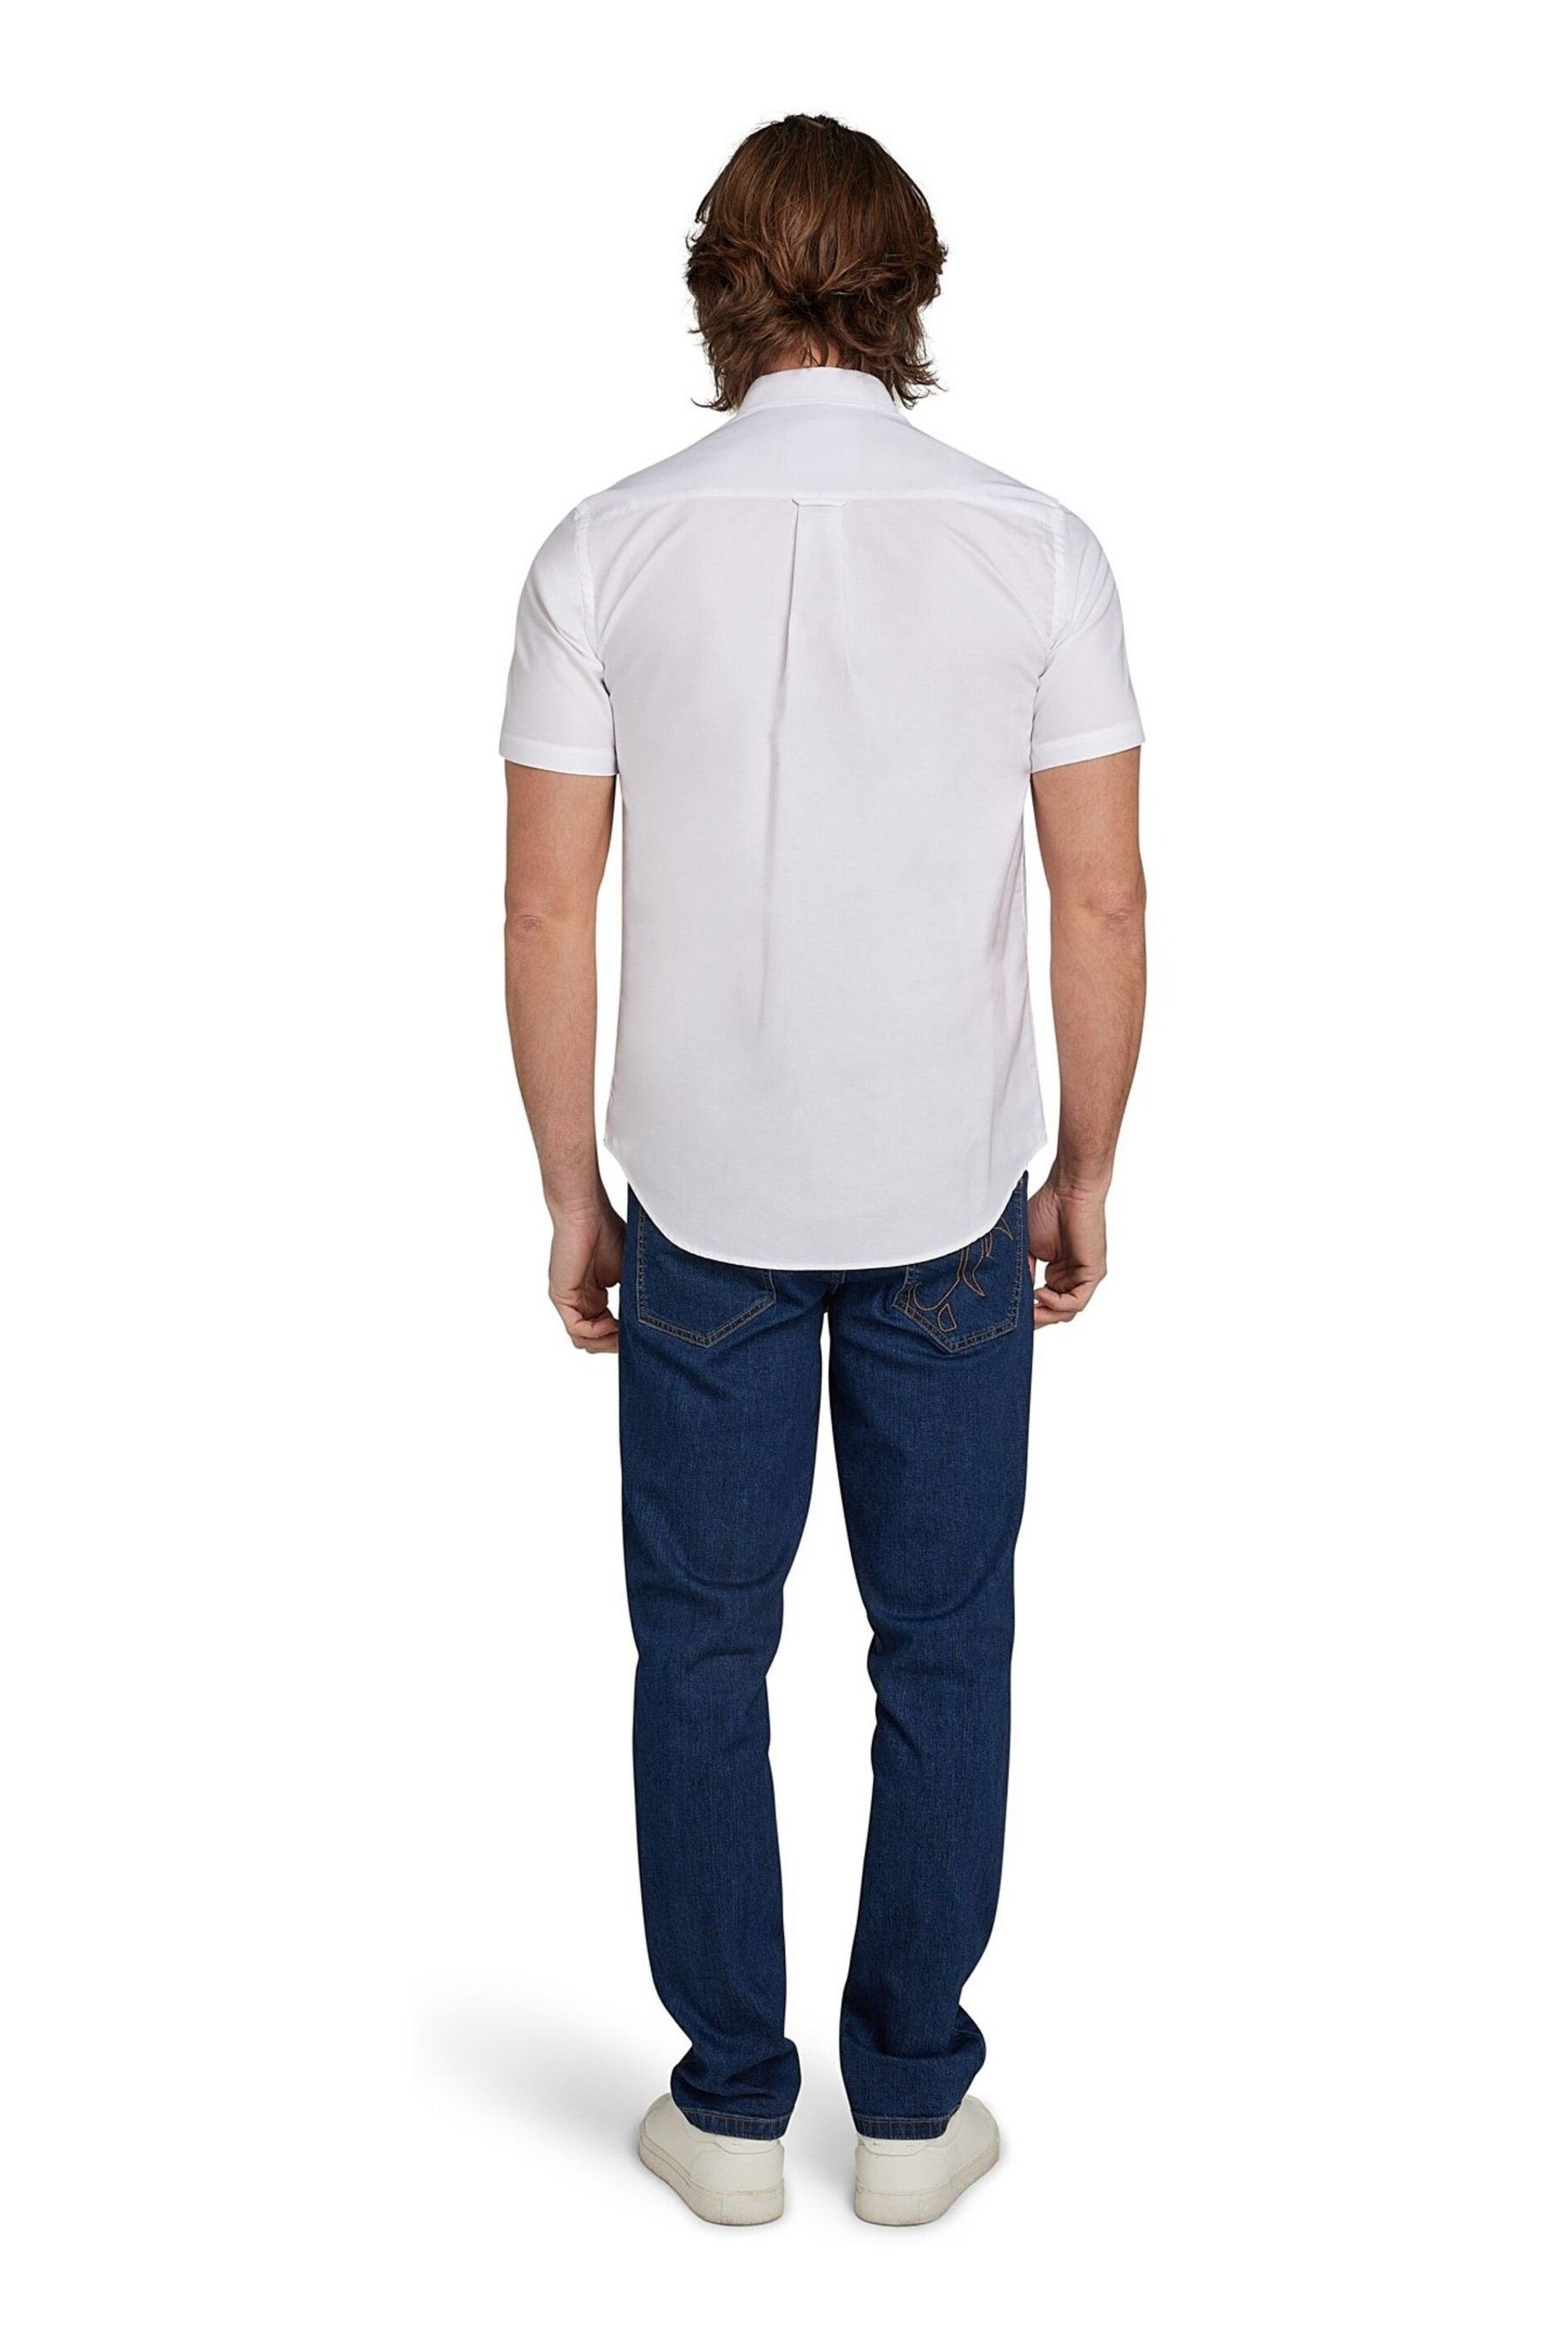 Raging Bull Short Sleeve Lightweight Oxford White Shirt - Image 3 of 7